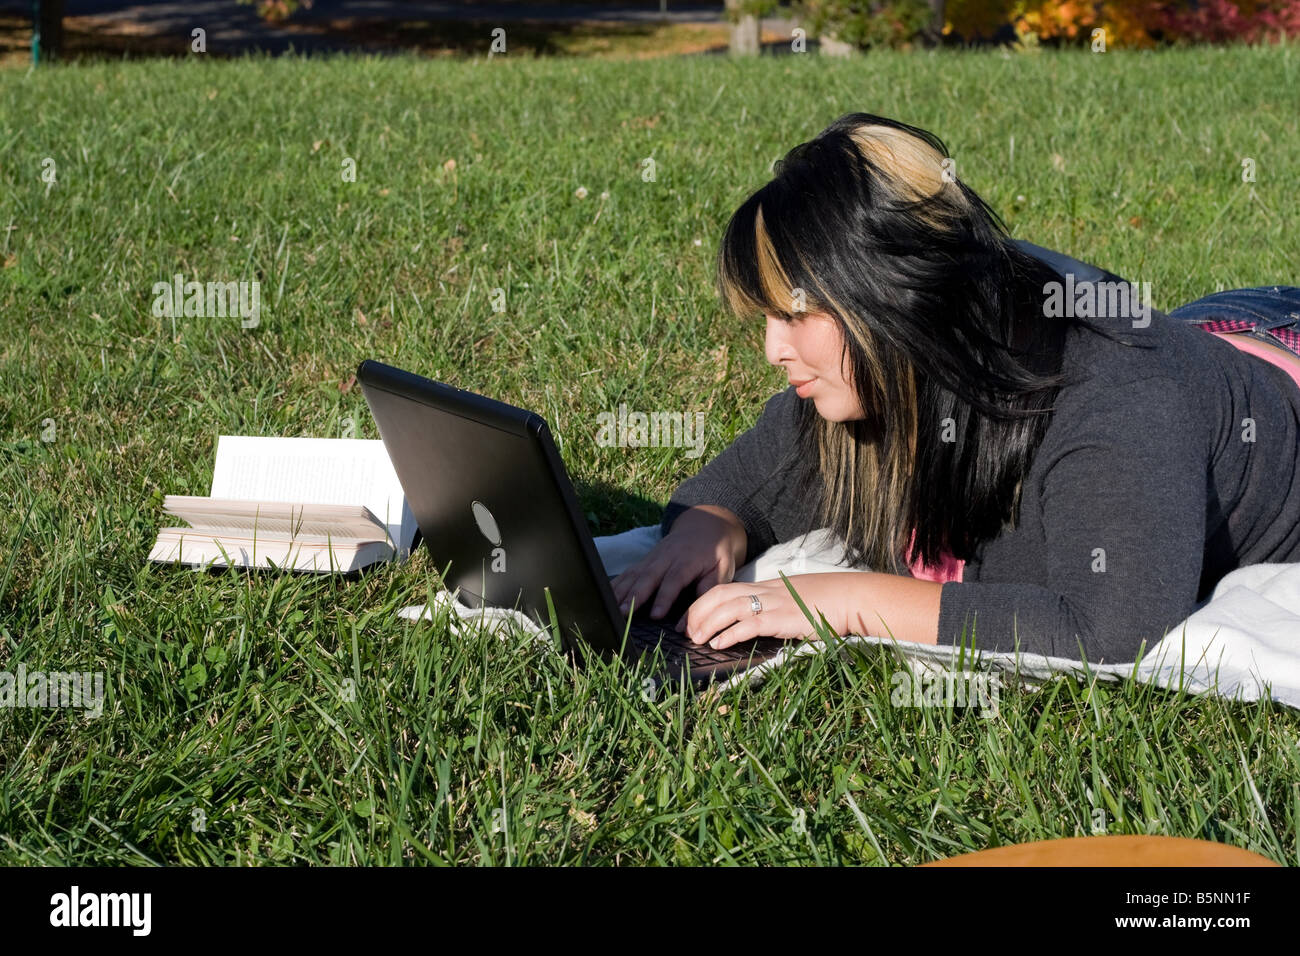 Un jeune étudiant en utilisant son ordinateur portable tout en jetant dans l'herbe par une belle journée Banque D'Images